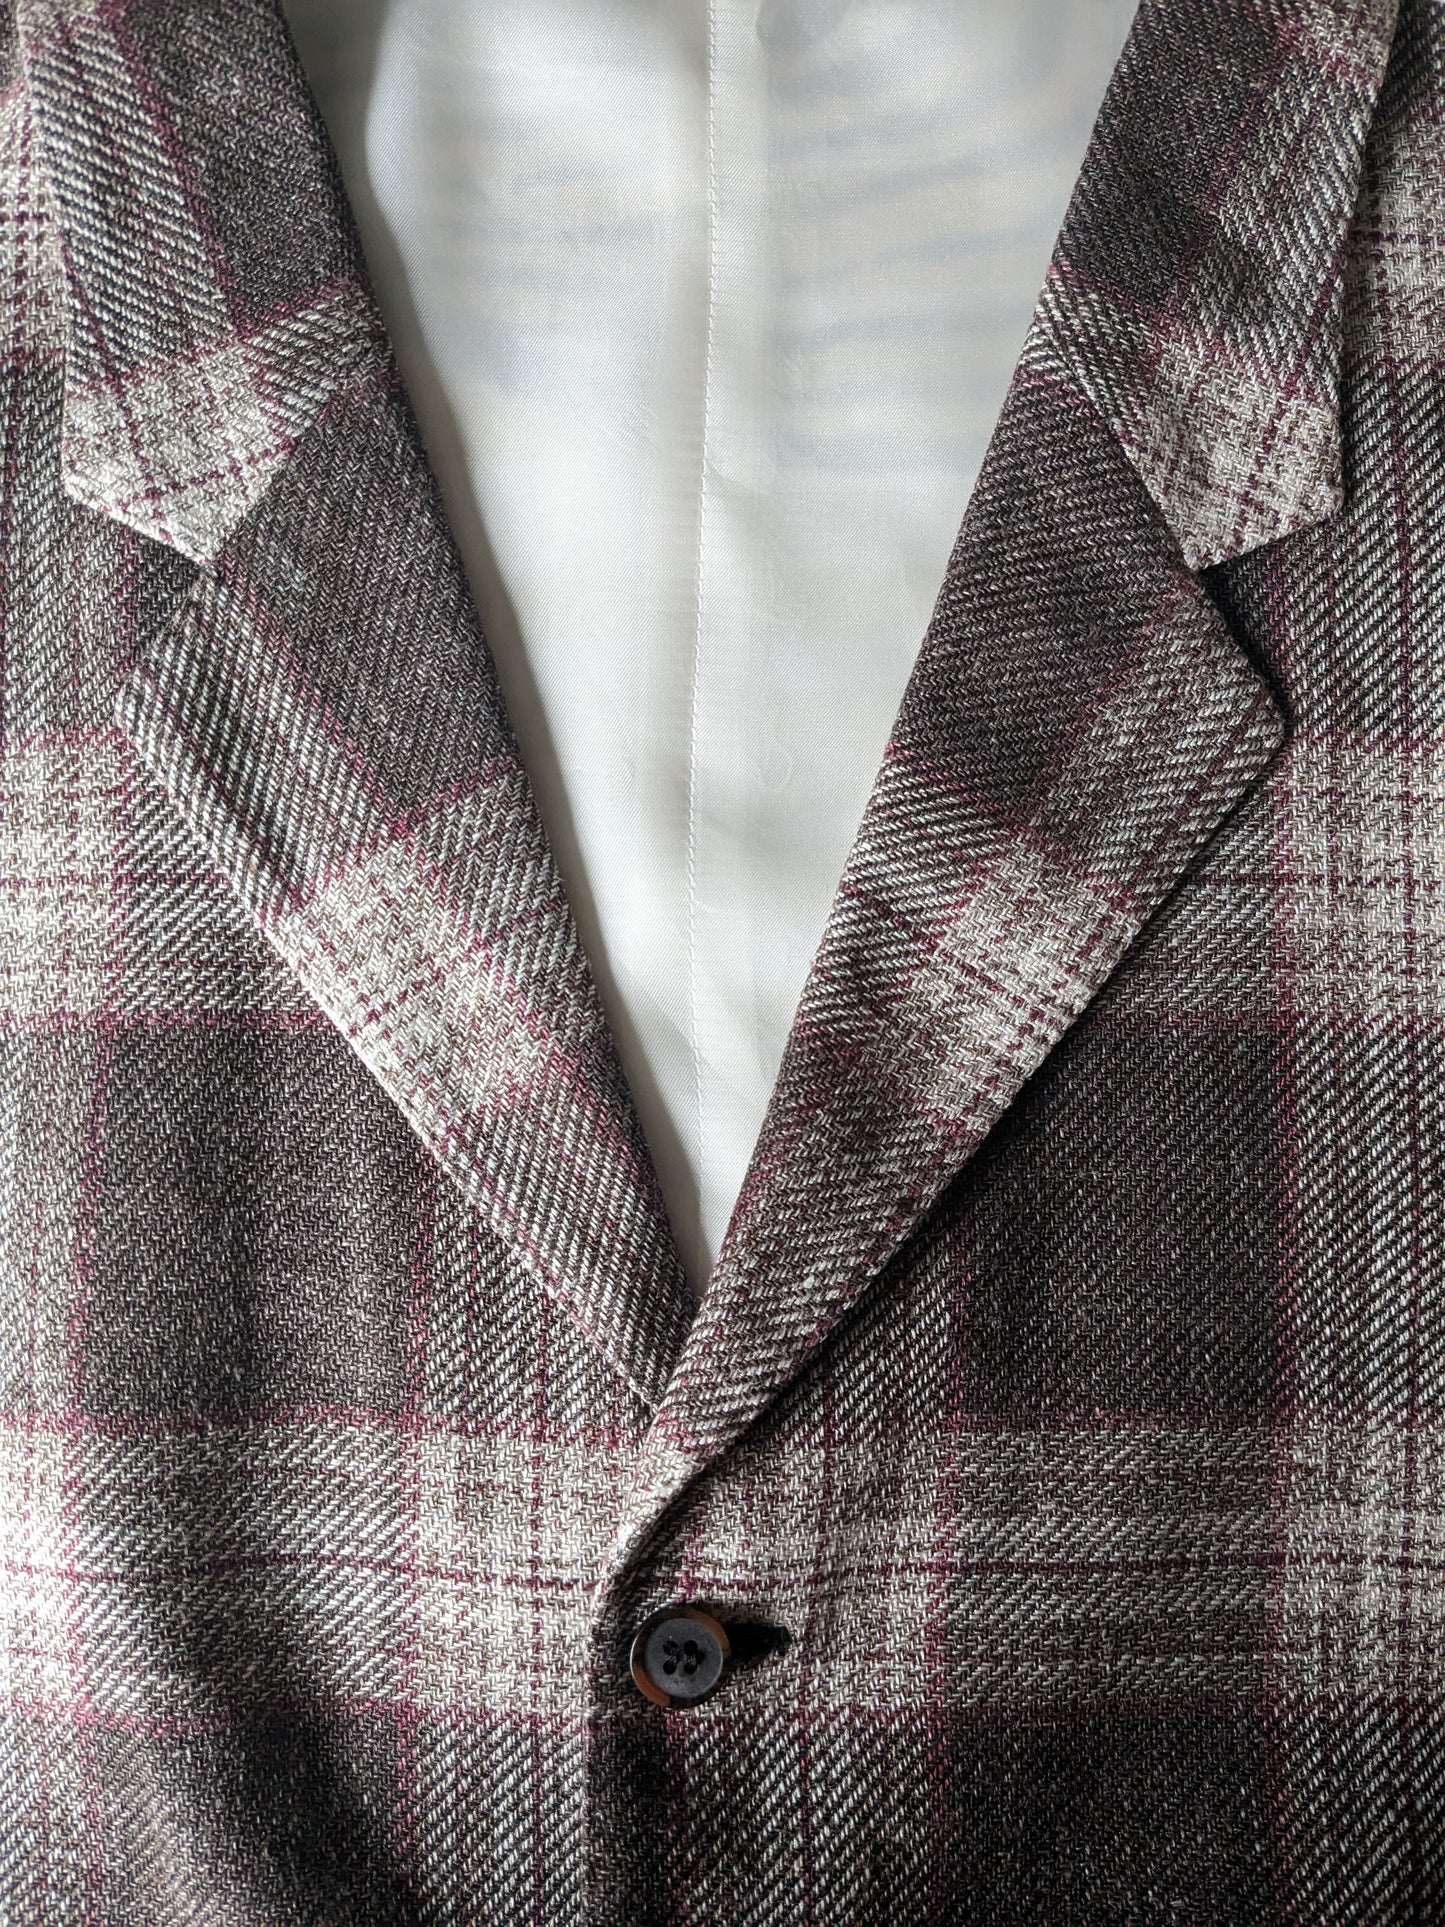 Suitsupply Silk / Linen Wistcoat con solapa. Marrón beige rojo revisado. Tamaño S.